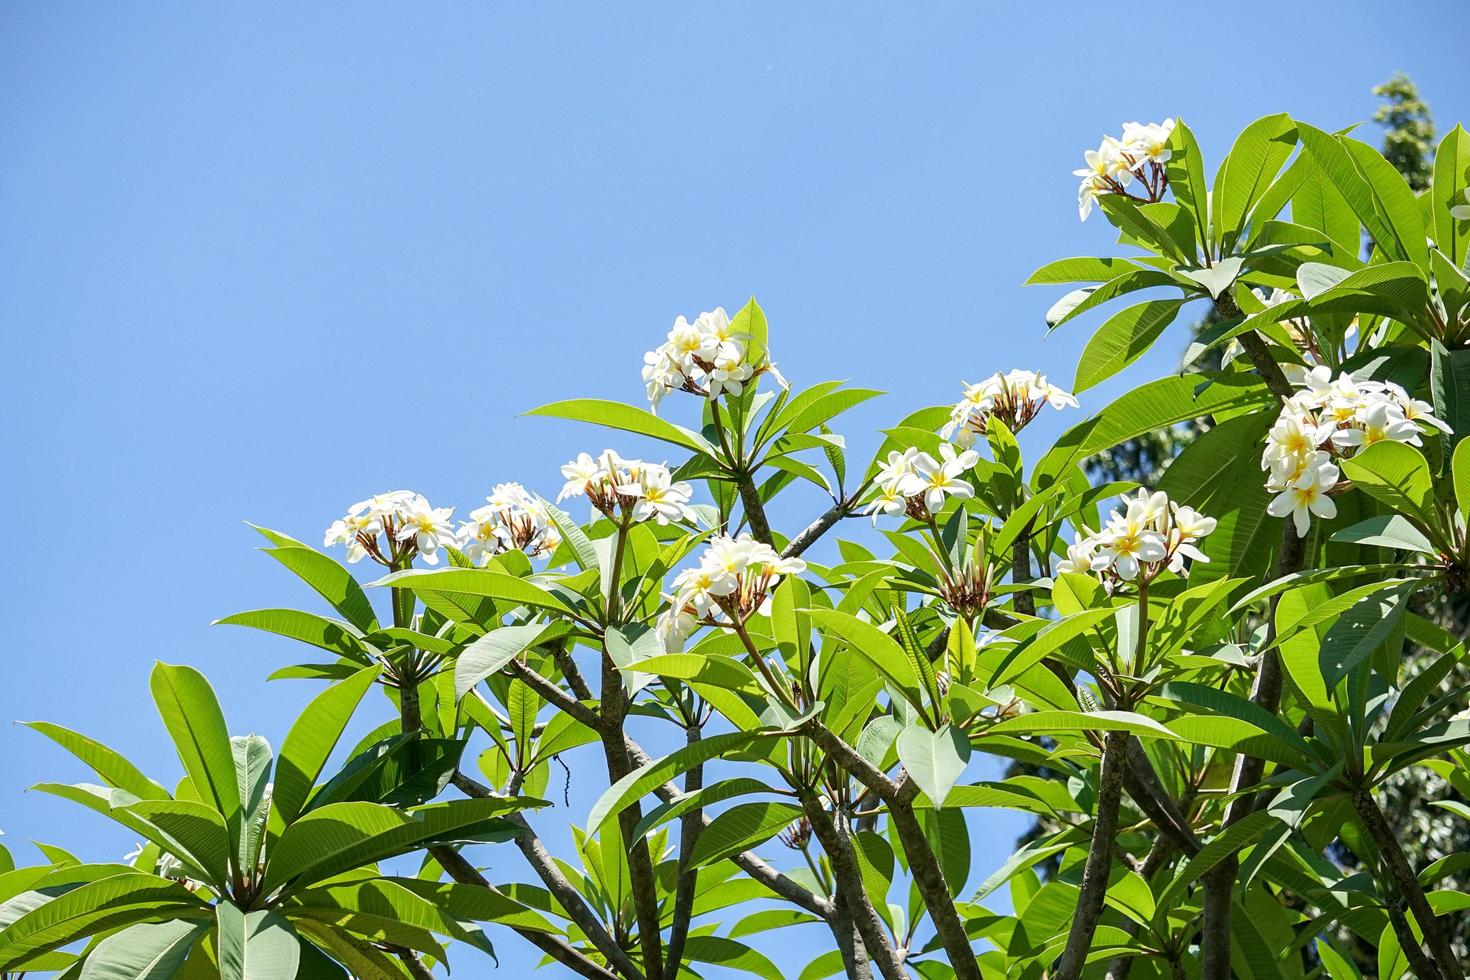 eine weiße Kamboja oder Plumeria, eine schöne Blume, die lange leben kann und in Jahren blüht. eine in asien häufig anzutreffende blumenpflanze. foto